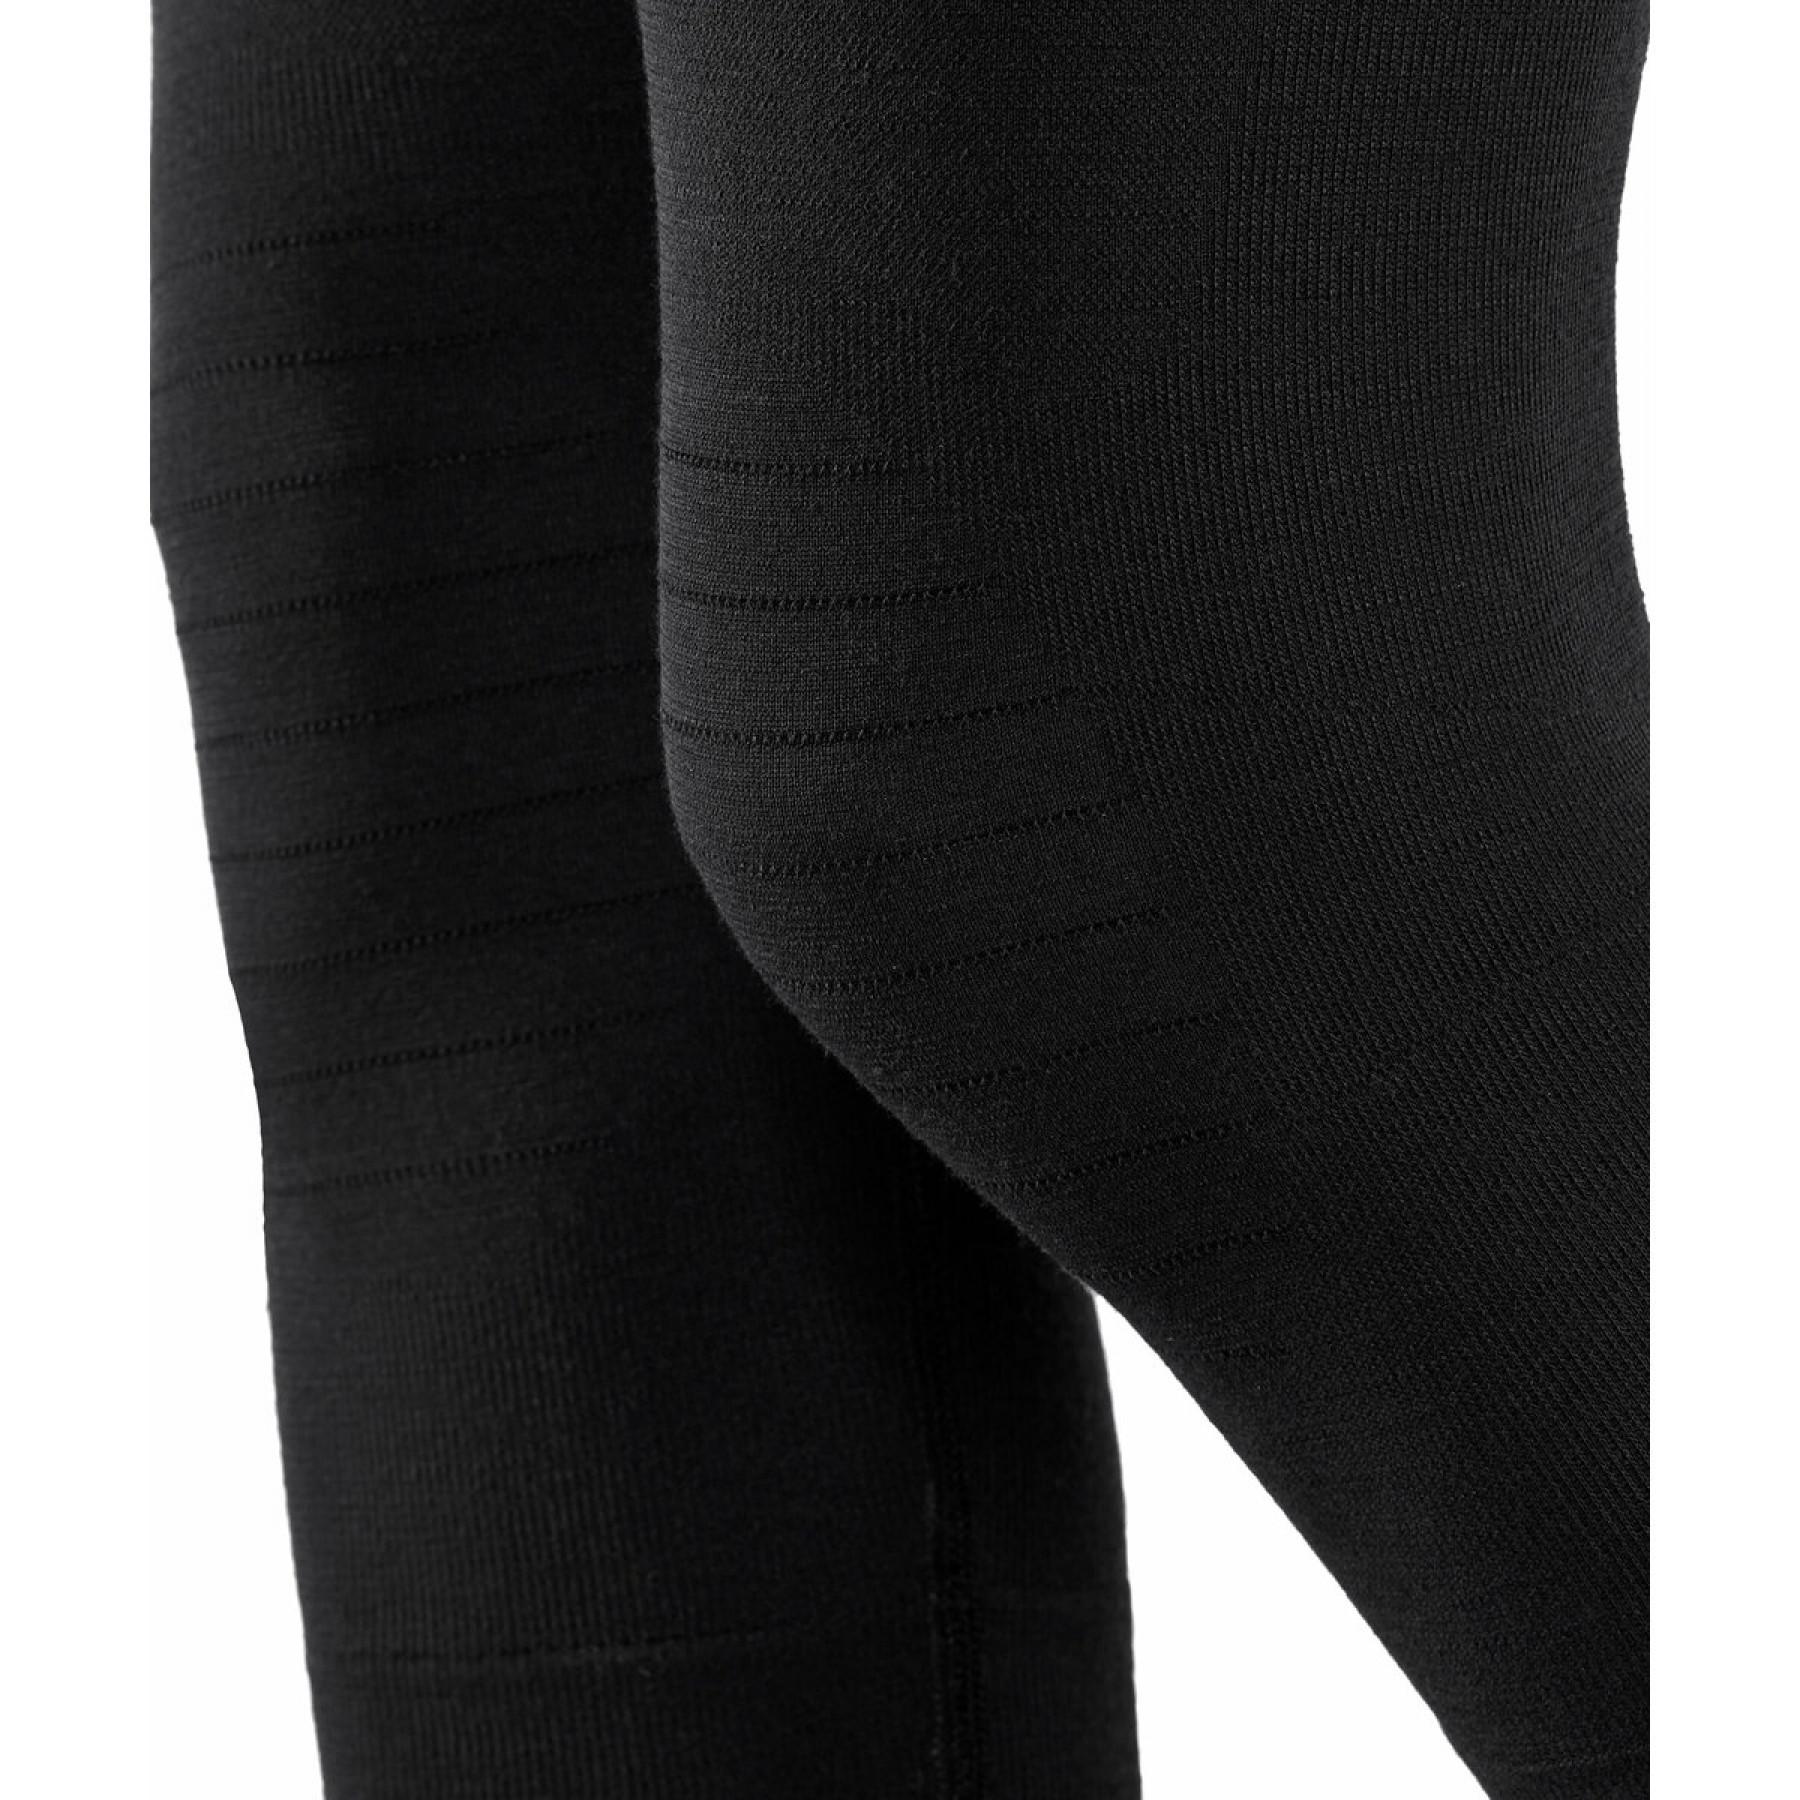 Women's tights Falke 3/4 Tights Wool-Tech Light